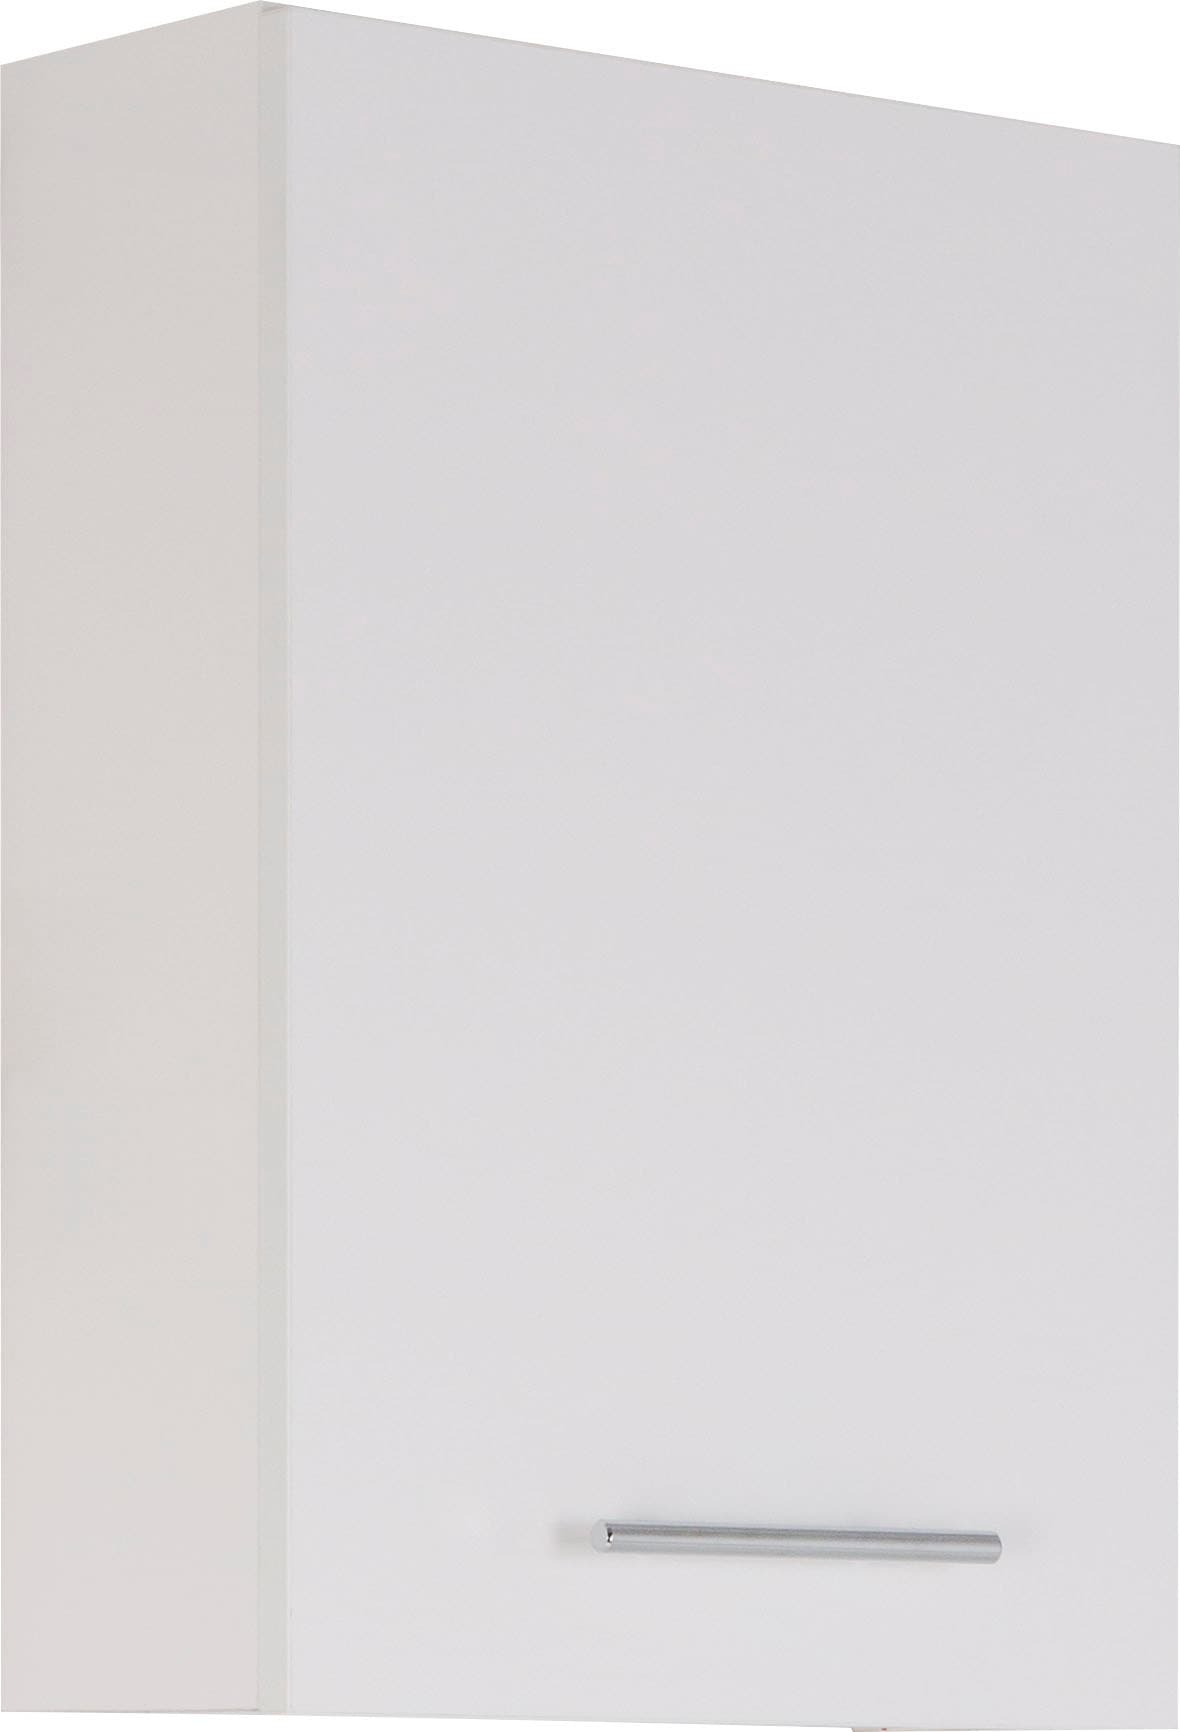 MARLIN Hängeschrank »3040«, Breite 40 cm kaufen bei OTTO